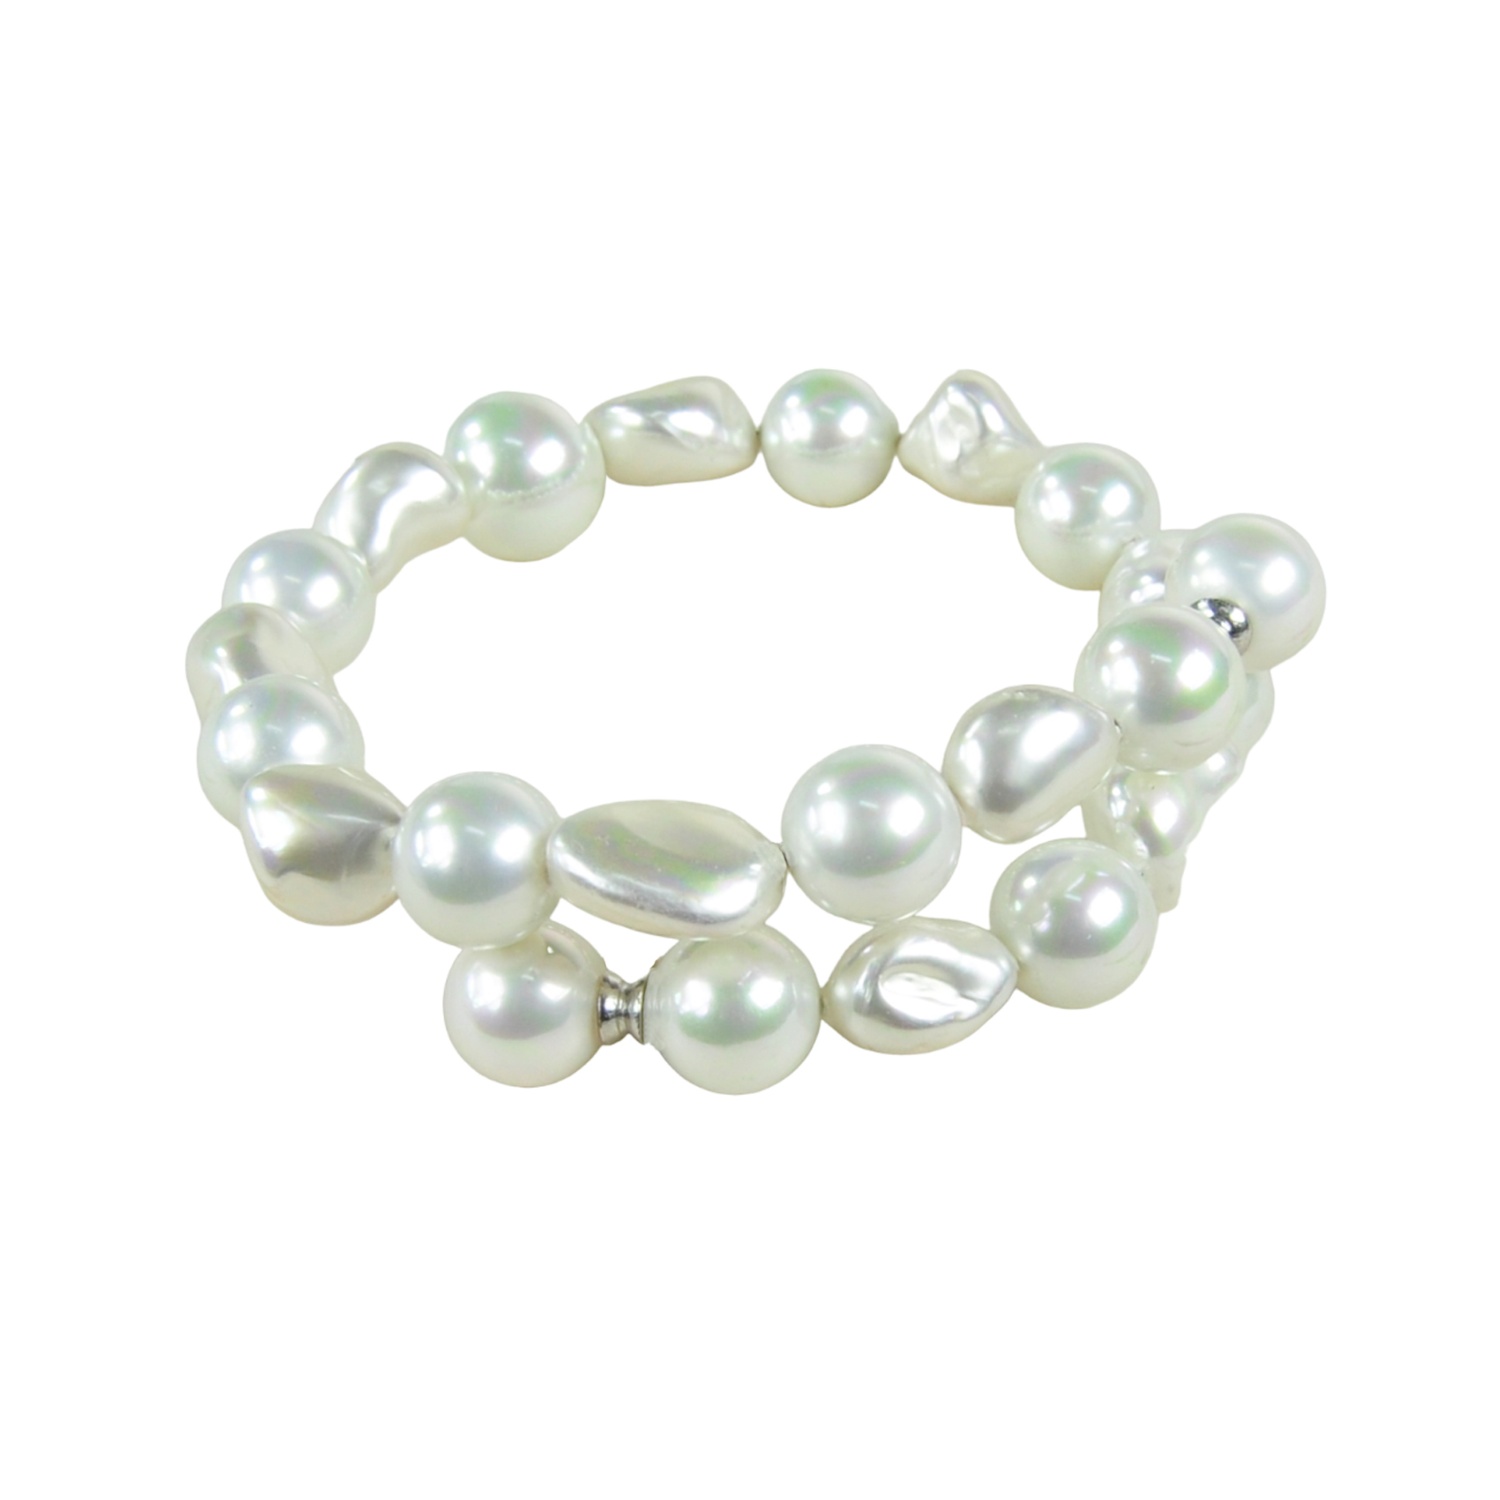 Brazalete de perlas adaptable a medidas estándar de entre 17 y 23cm